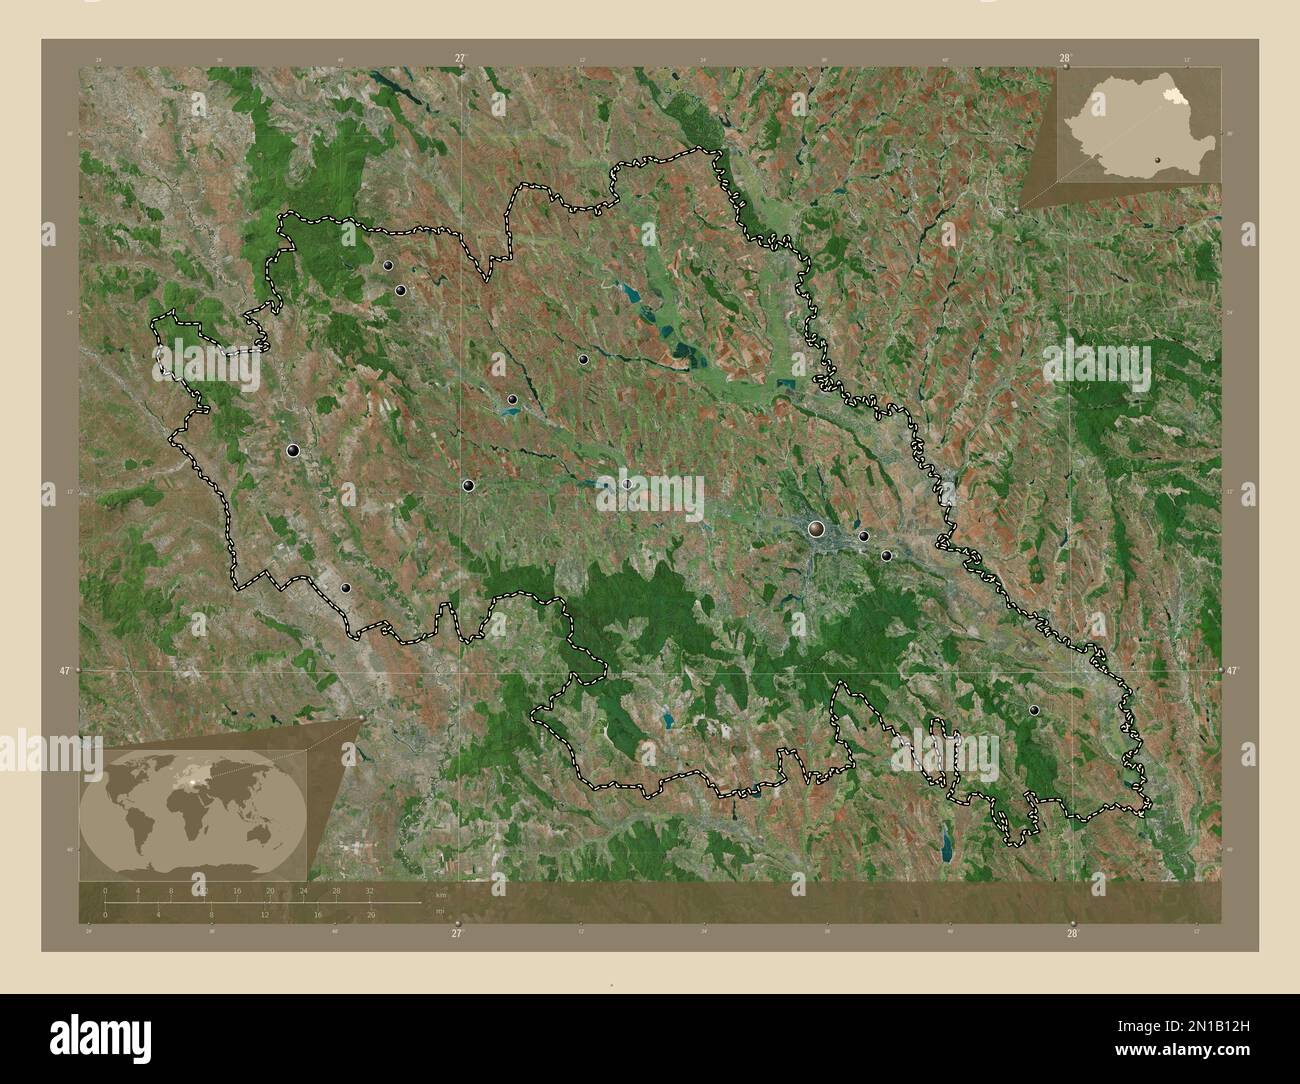 Iasi, comté de Roumanie. Carte satellite haute résolution. Lieux des principales villes de la région. Cartes d'emplacement auxiliaire d'angle Banque D'Images